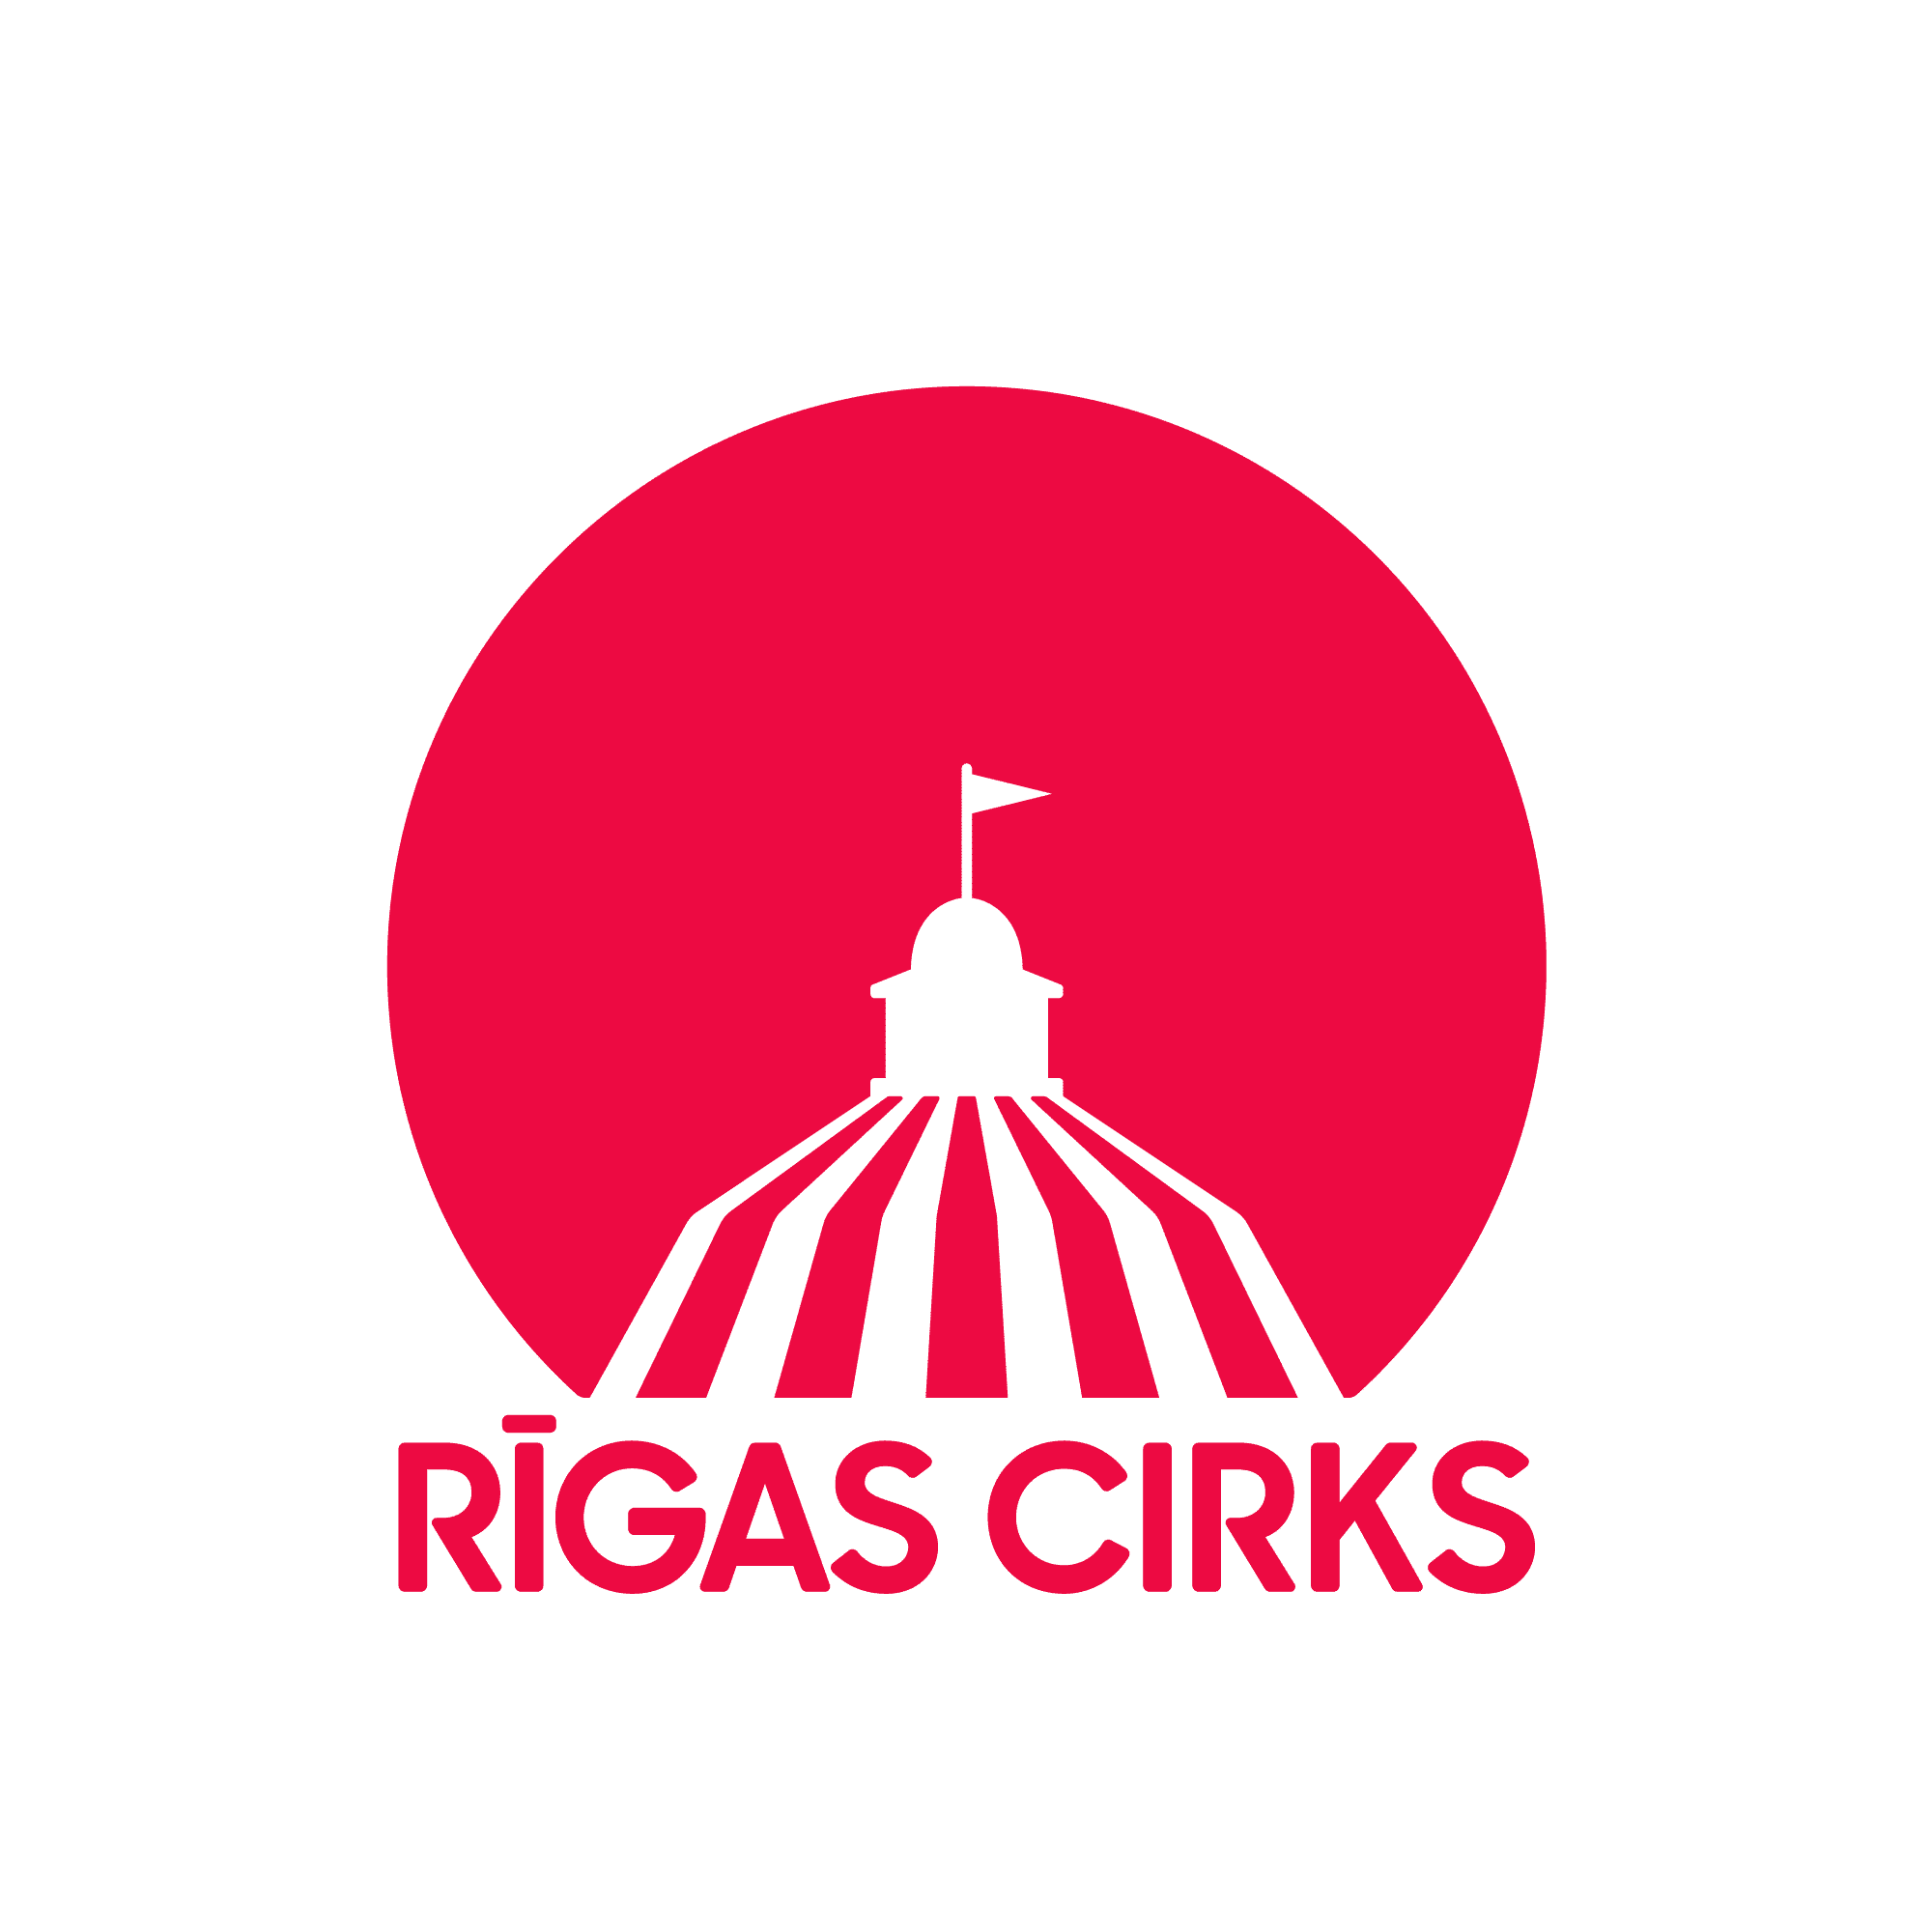 Riga Cirks circusnext - European Circus Label